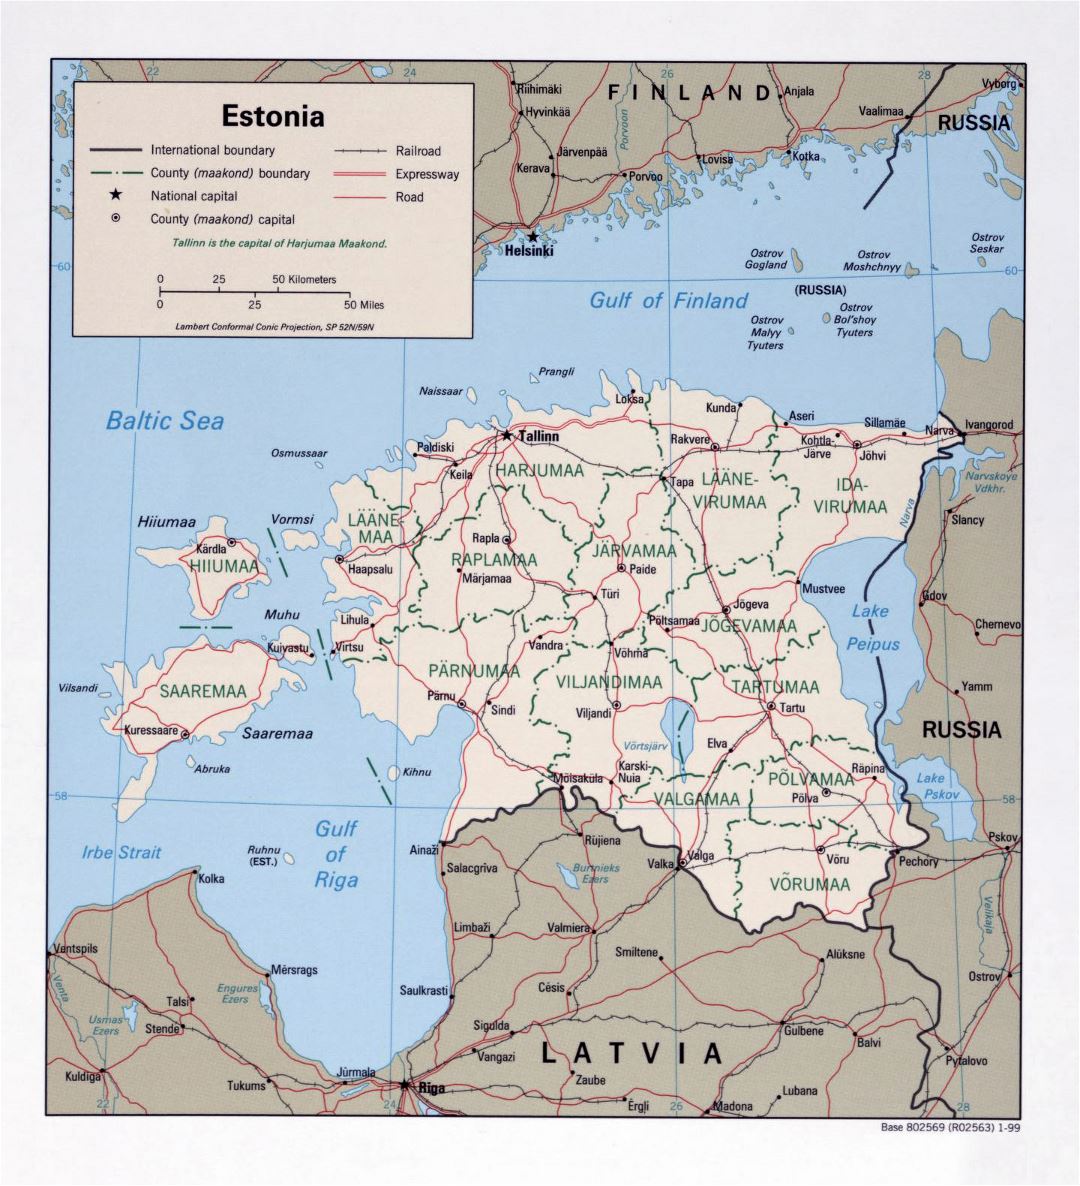 Mapa político y administrativo grande de Estonia - 1999